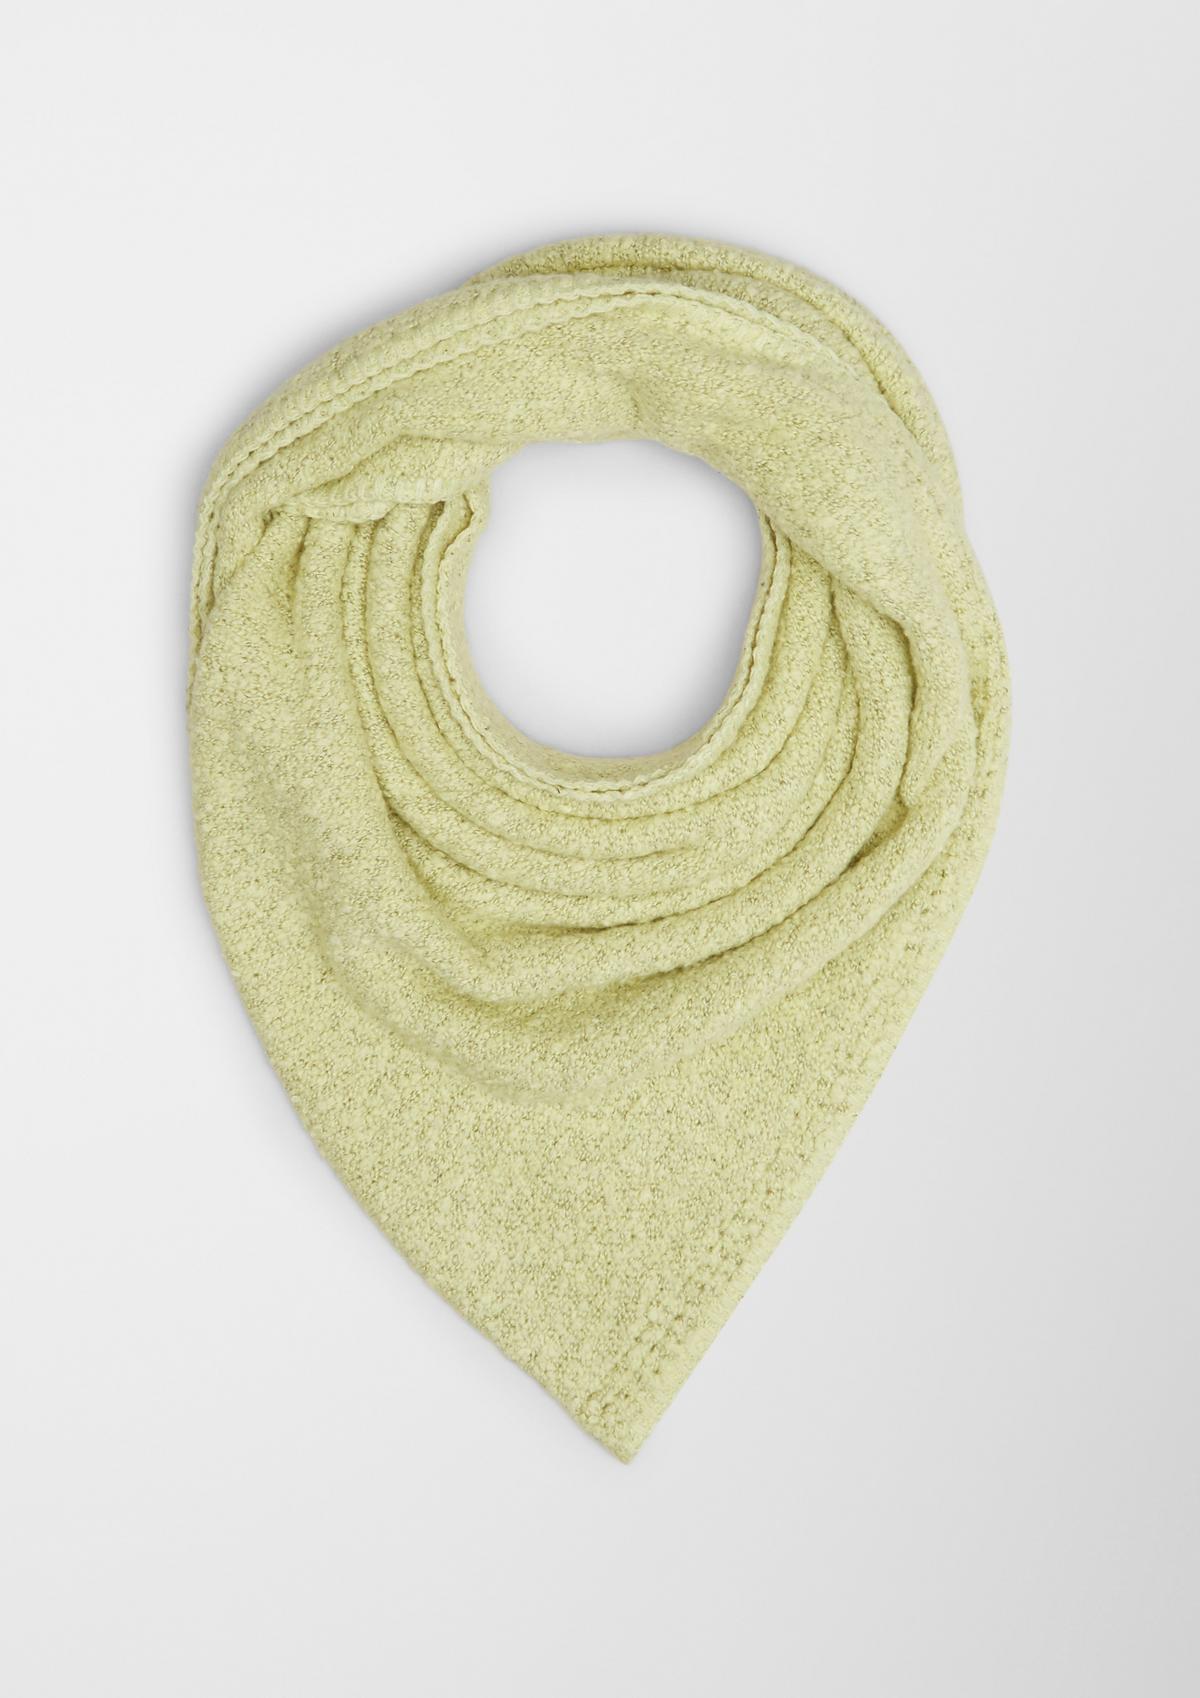 Triangular scarf made of teddy plush